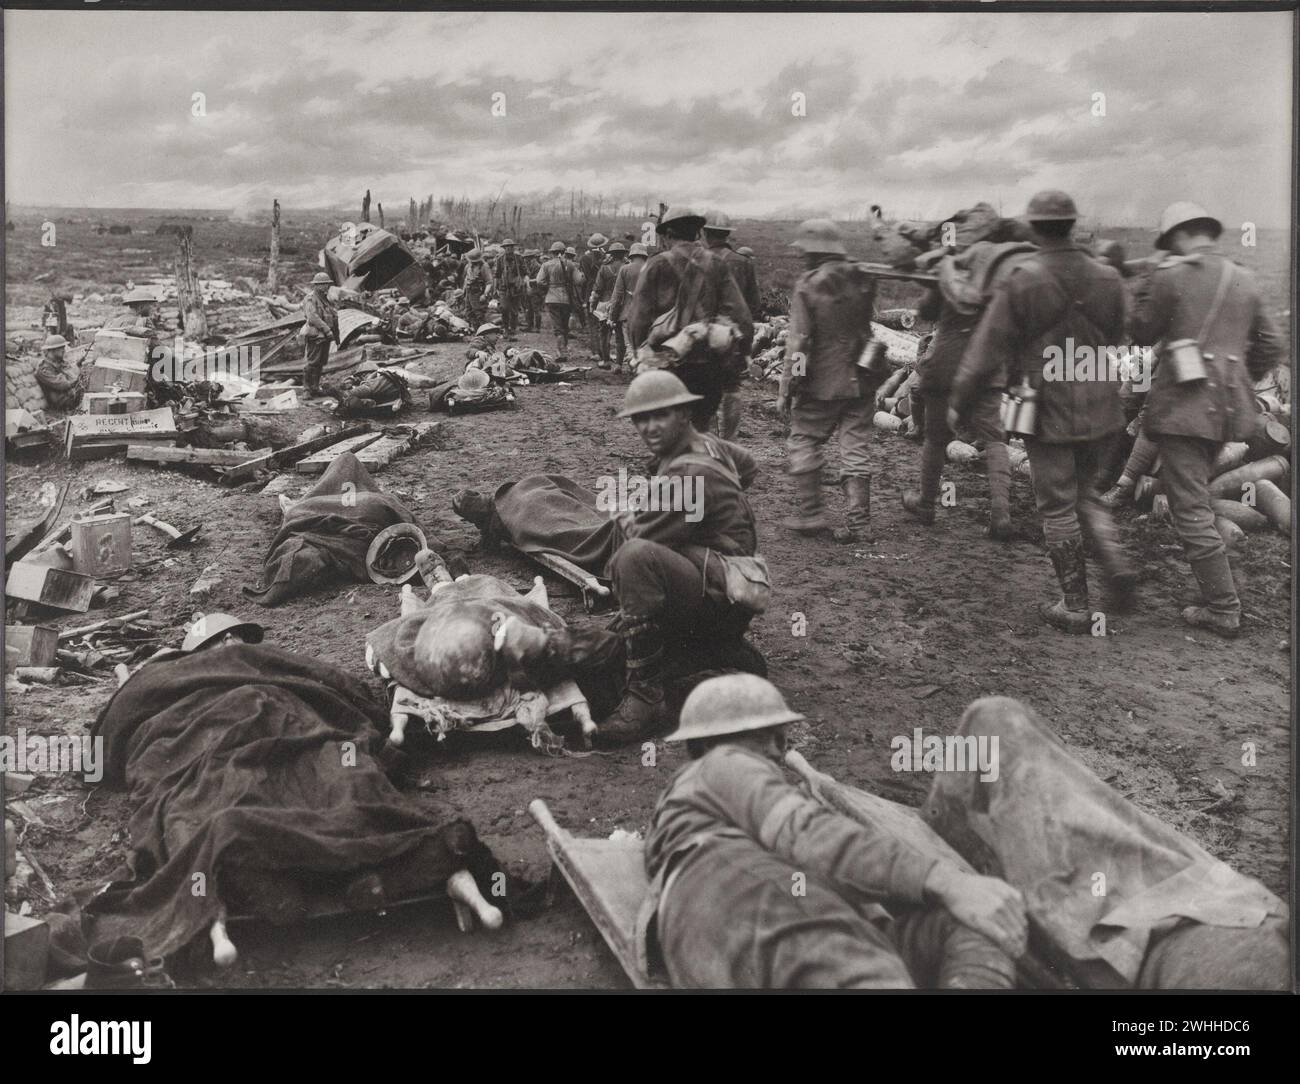 Belgio: Uomini feriti nella battaglia di Ypres del 20 settembre 1917. La battaglia della Menin Road, nella quale gli australiani presero parte di primo piano. Di ritorno dalla linea avanzata del fronte c'è un flusso continuo di feriti a piedi e prigionieri. I rifiuti lungo il lato della strada sono barelle che sopportano feriti gravemente in attesa del trasporto in ambulanza. Foto del 1917-1918 di Capt F.Hurley Foto Stock